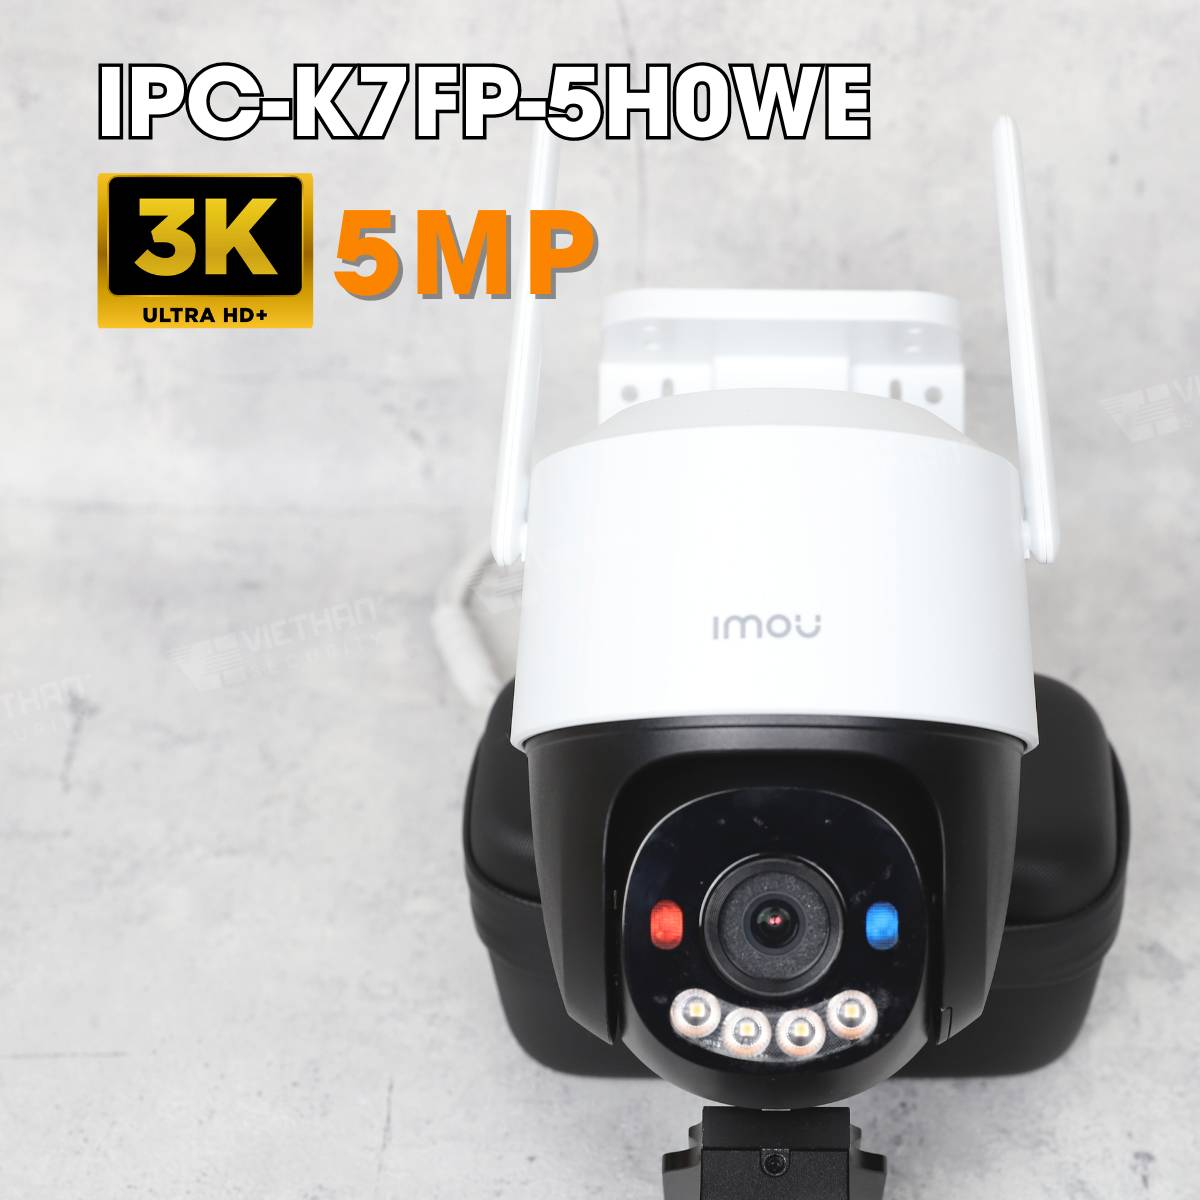 Camera ngoài trời Cruiser SC IMOU IPC-K7FP-5H0WE 3K 5MP, xoay 360 độ, đèn báo xanh đỏ, Wi-Fi 6, đàm thoại 2 chiều